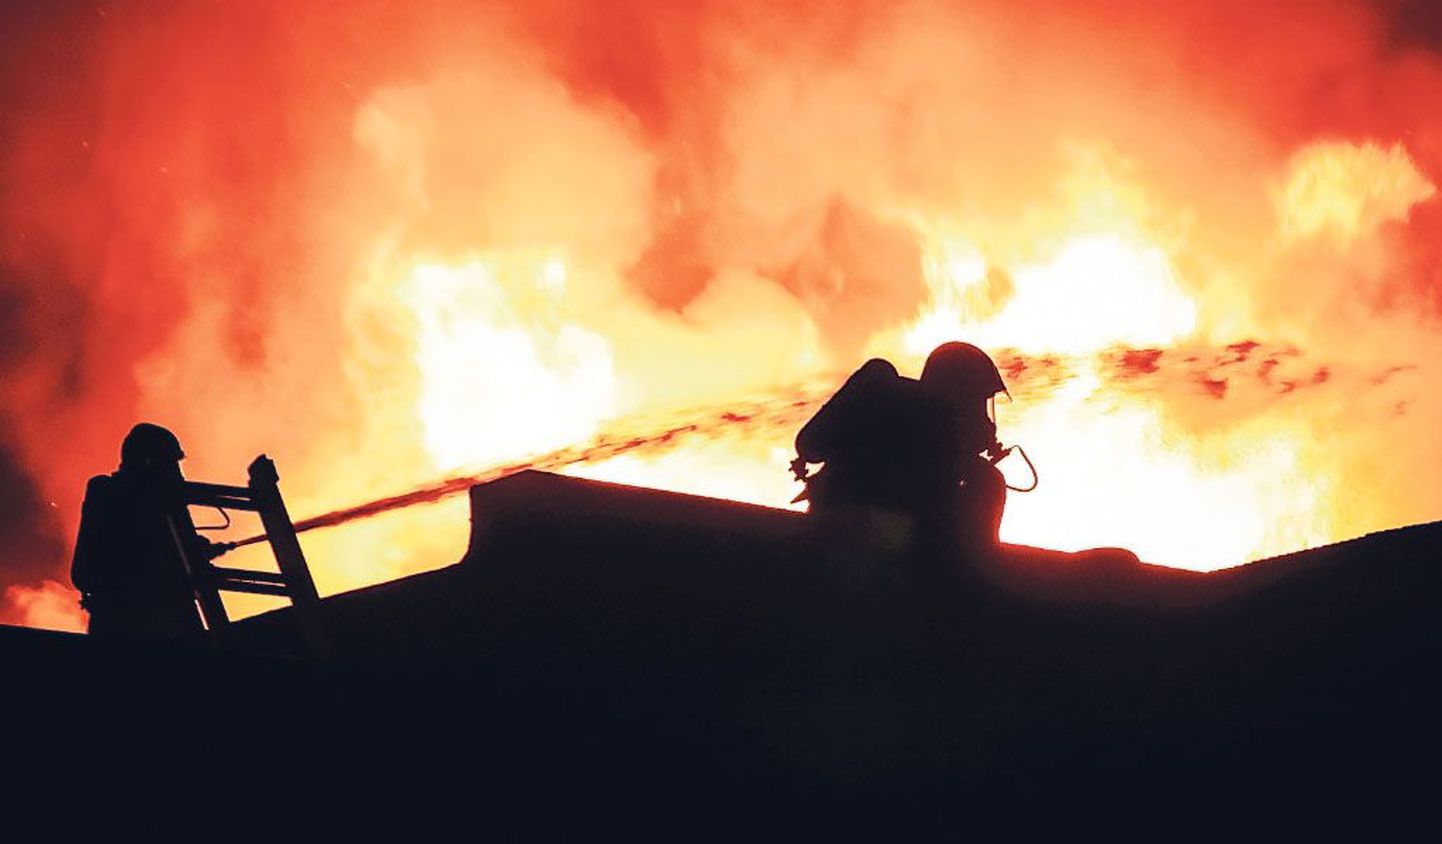 Kuigi teate tulekahjust sai häirekeskus juba kell 21.33, võtsid päästjatel põleva laevatehase kustutustööd aega varahommikuni.